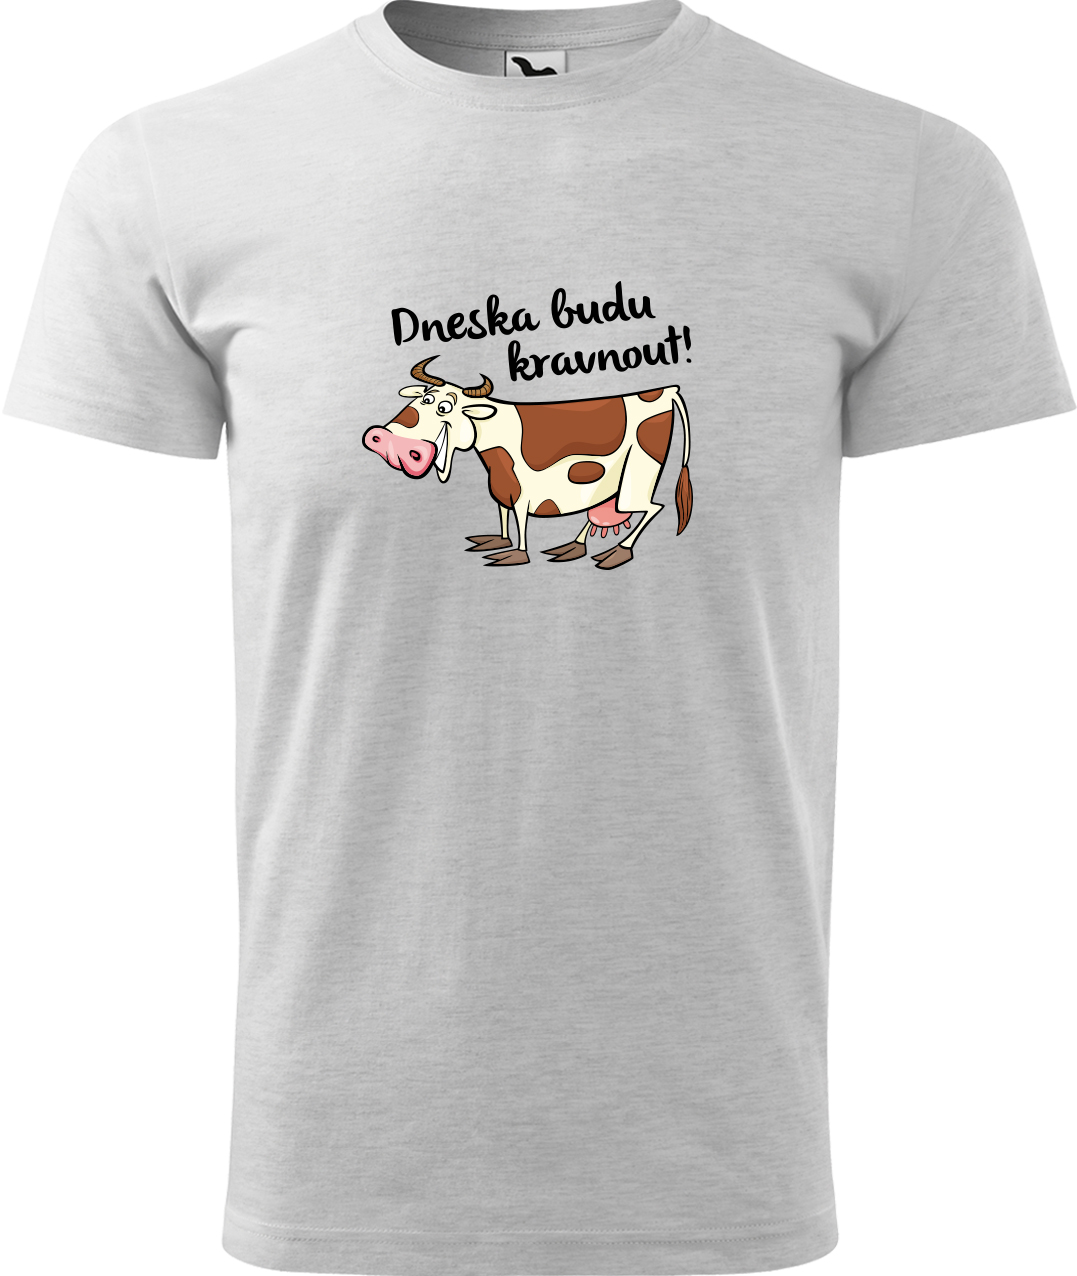 Pánské tričko s krávou - Dneska budu kravnout! Velikost: L, Barva: Světle šedý melír (03), Střih: pánský